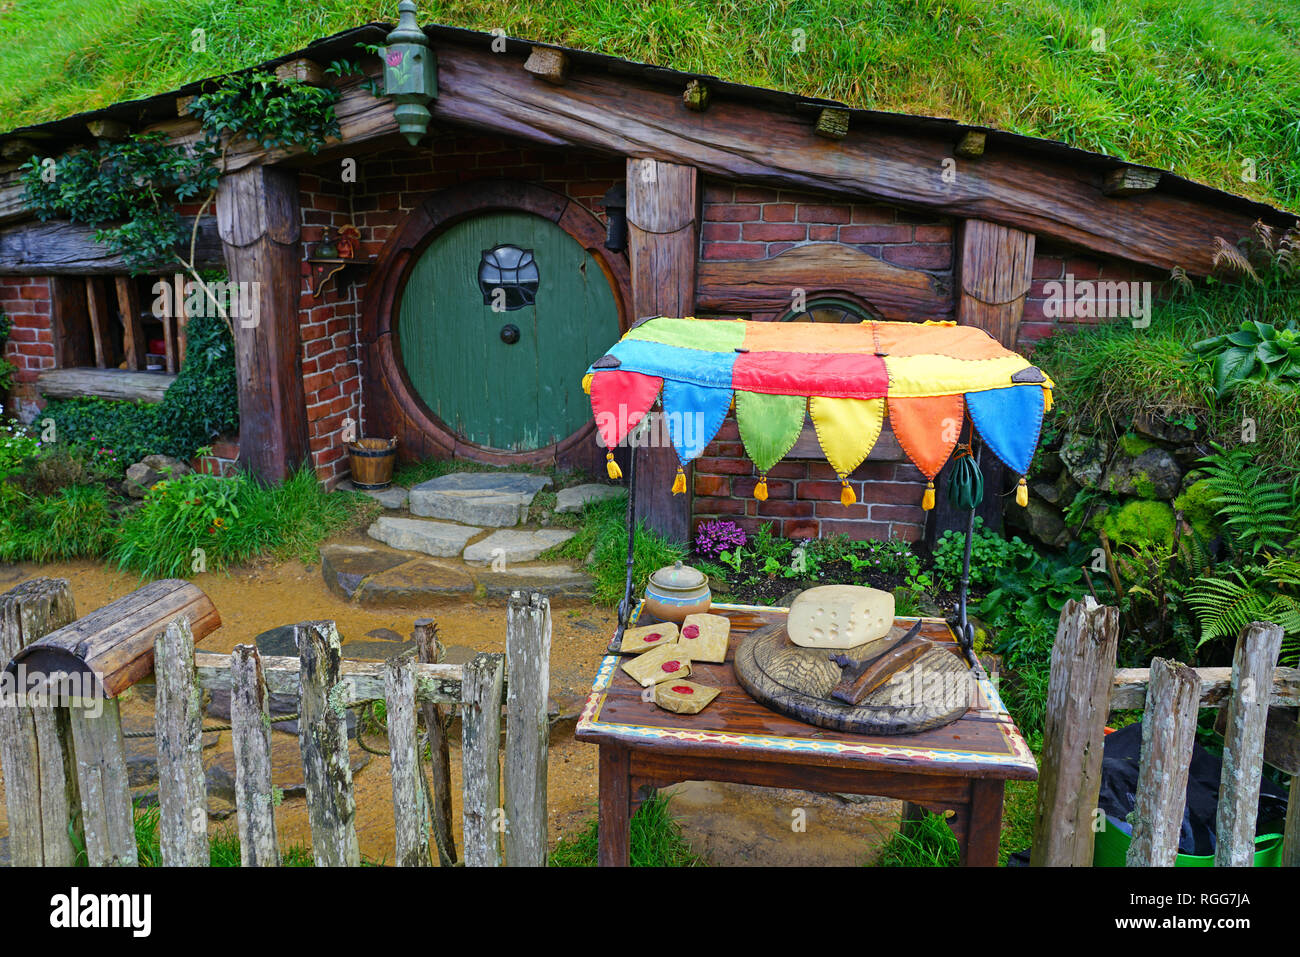 MATAMATA, NUEVA ZELANDIA - Vista de la película de Hobbiton, el Alexander Farm, donde Peter Jackson filmado varios el señor de los anillos ad Hobbit películas. Foto de stock